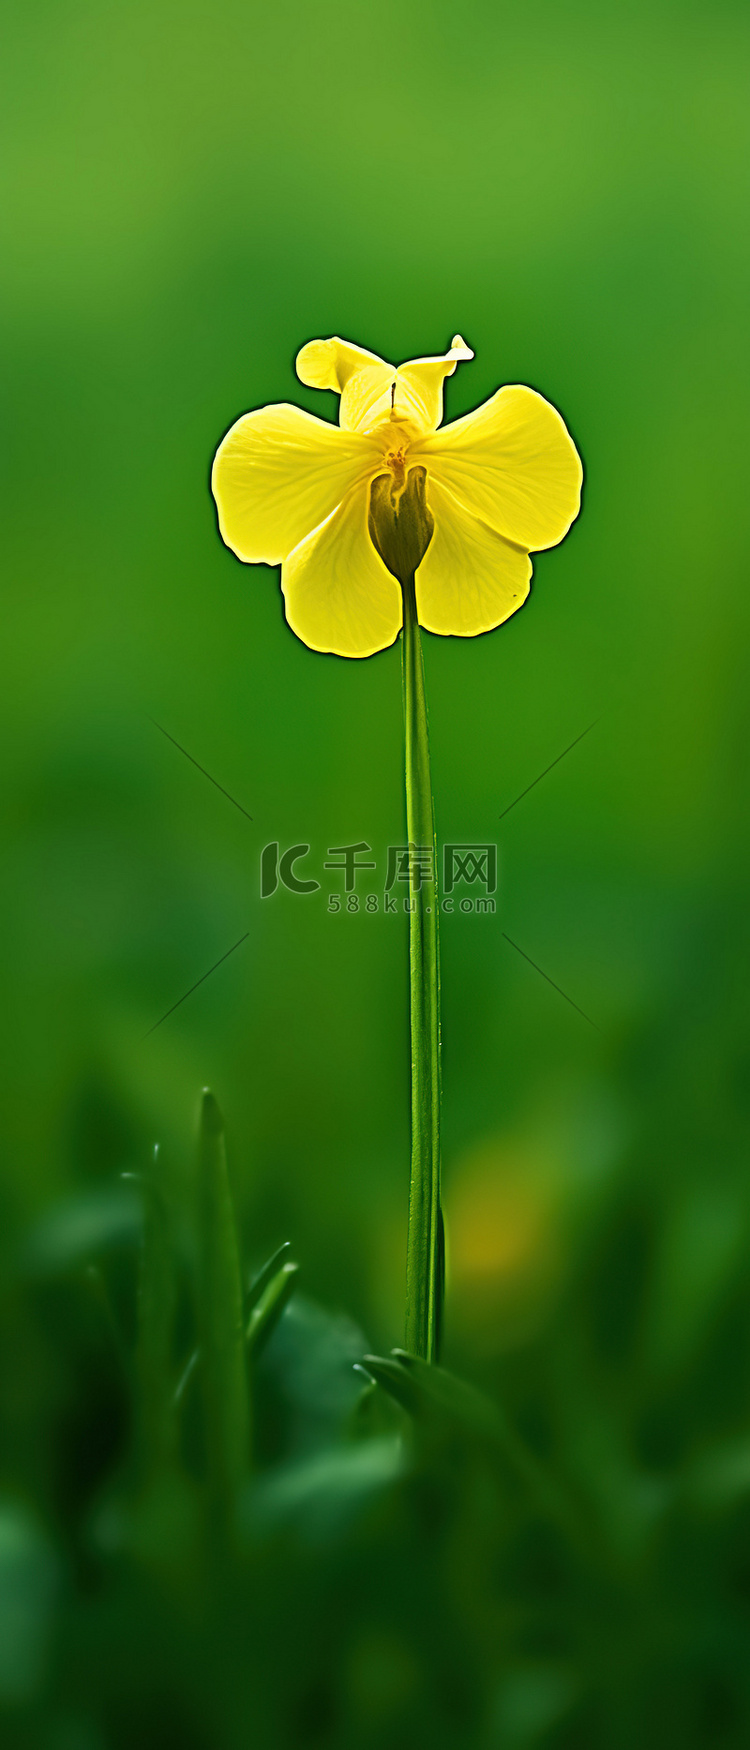 一朵小黄花独自坐在田野绿色的绿